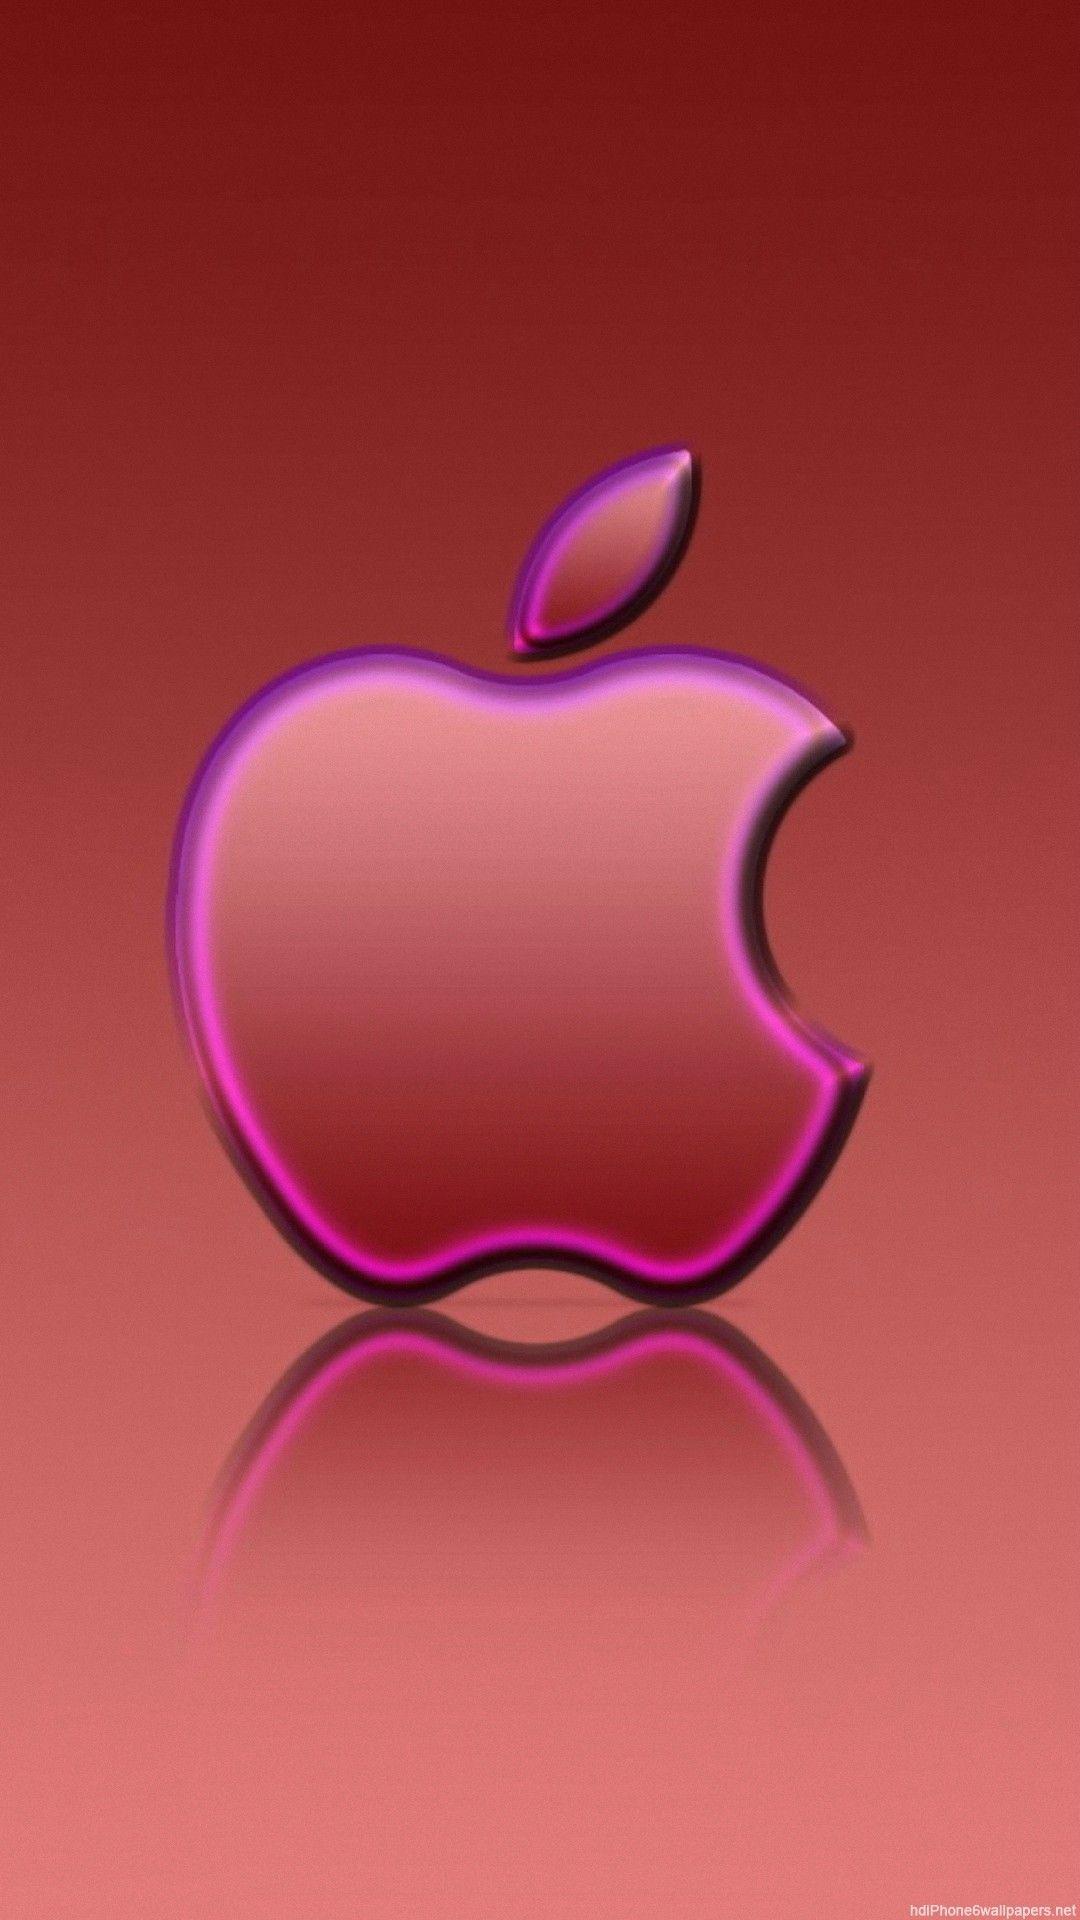 Funny Apple logo wallpaper